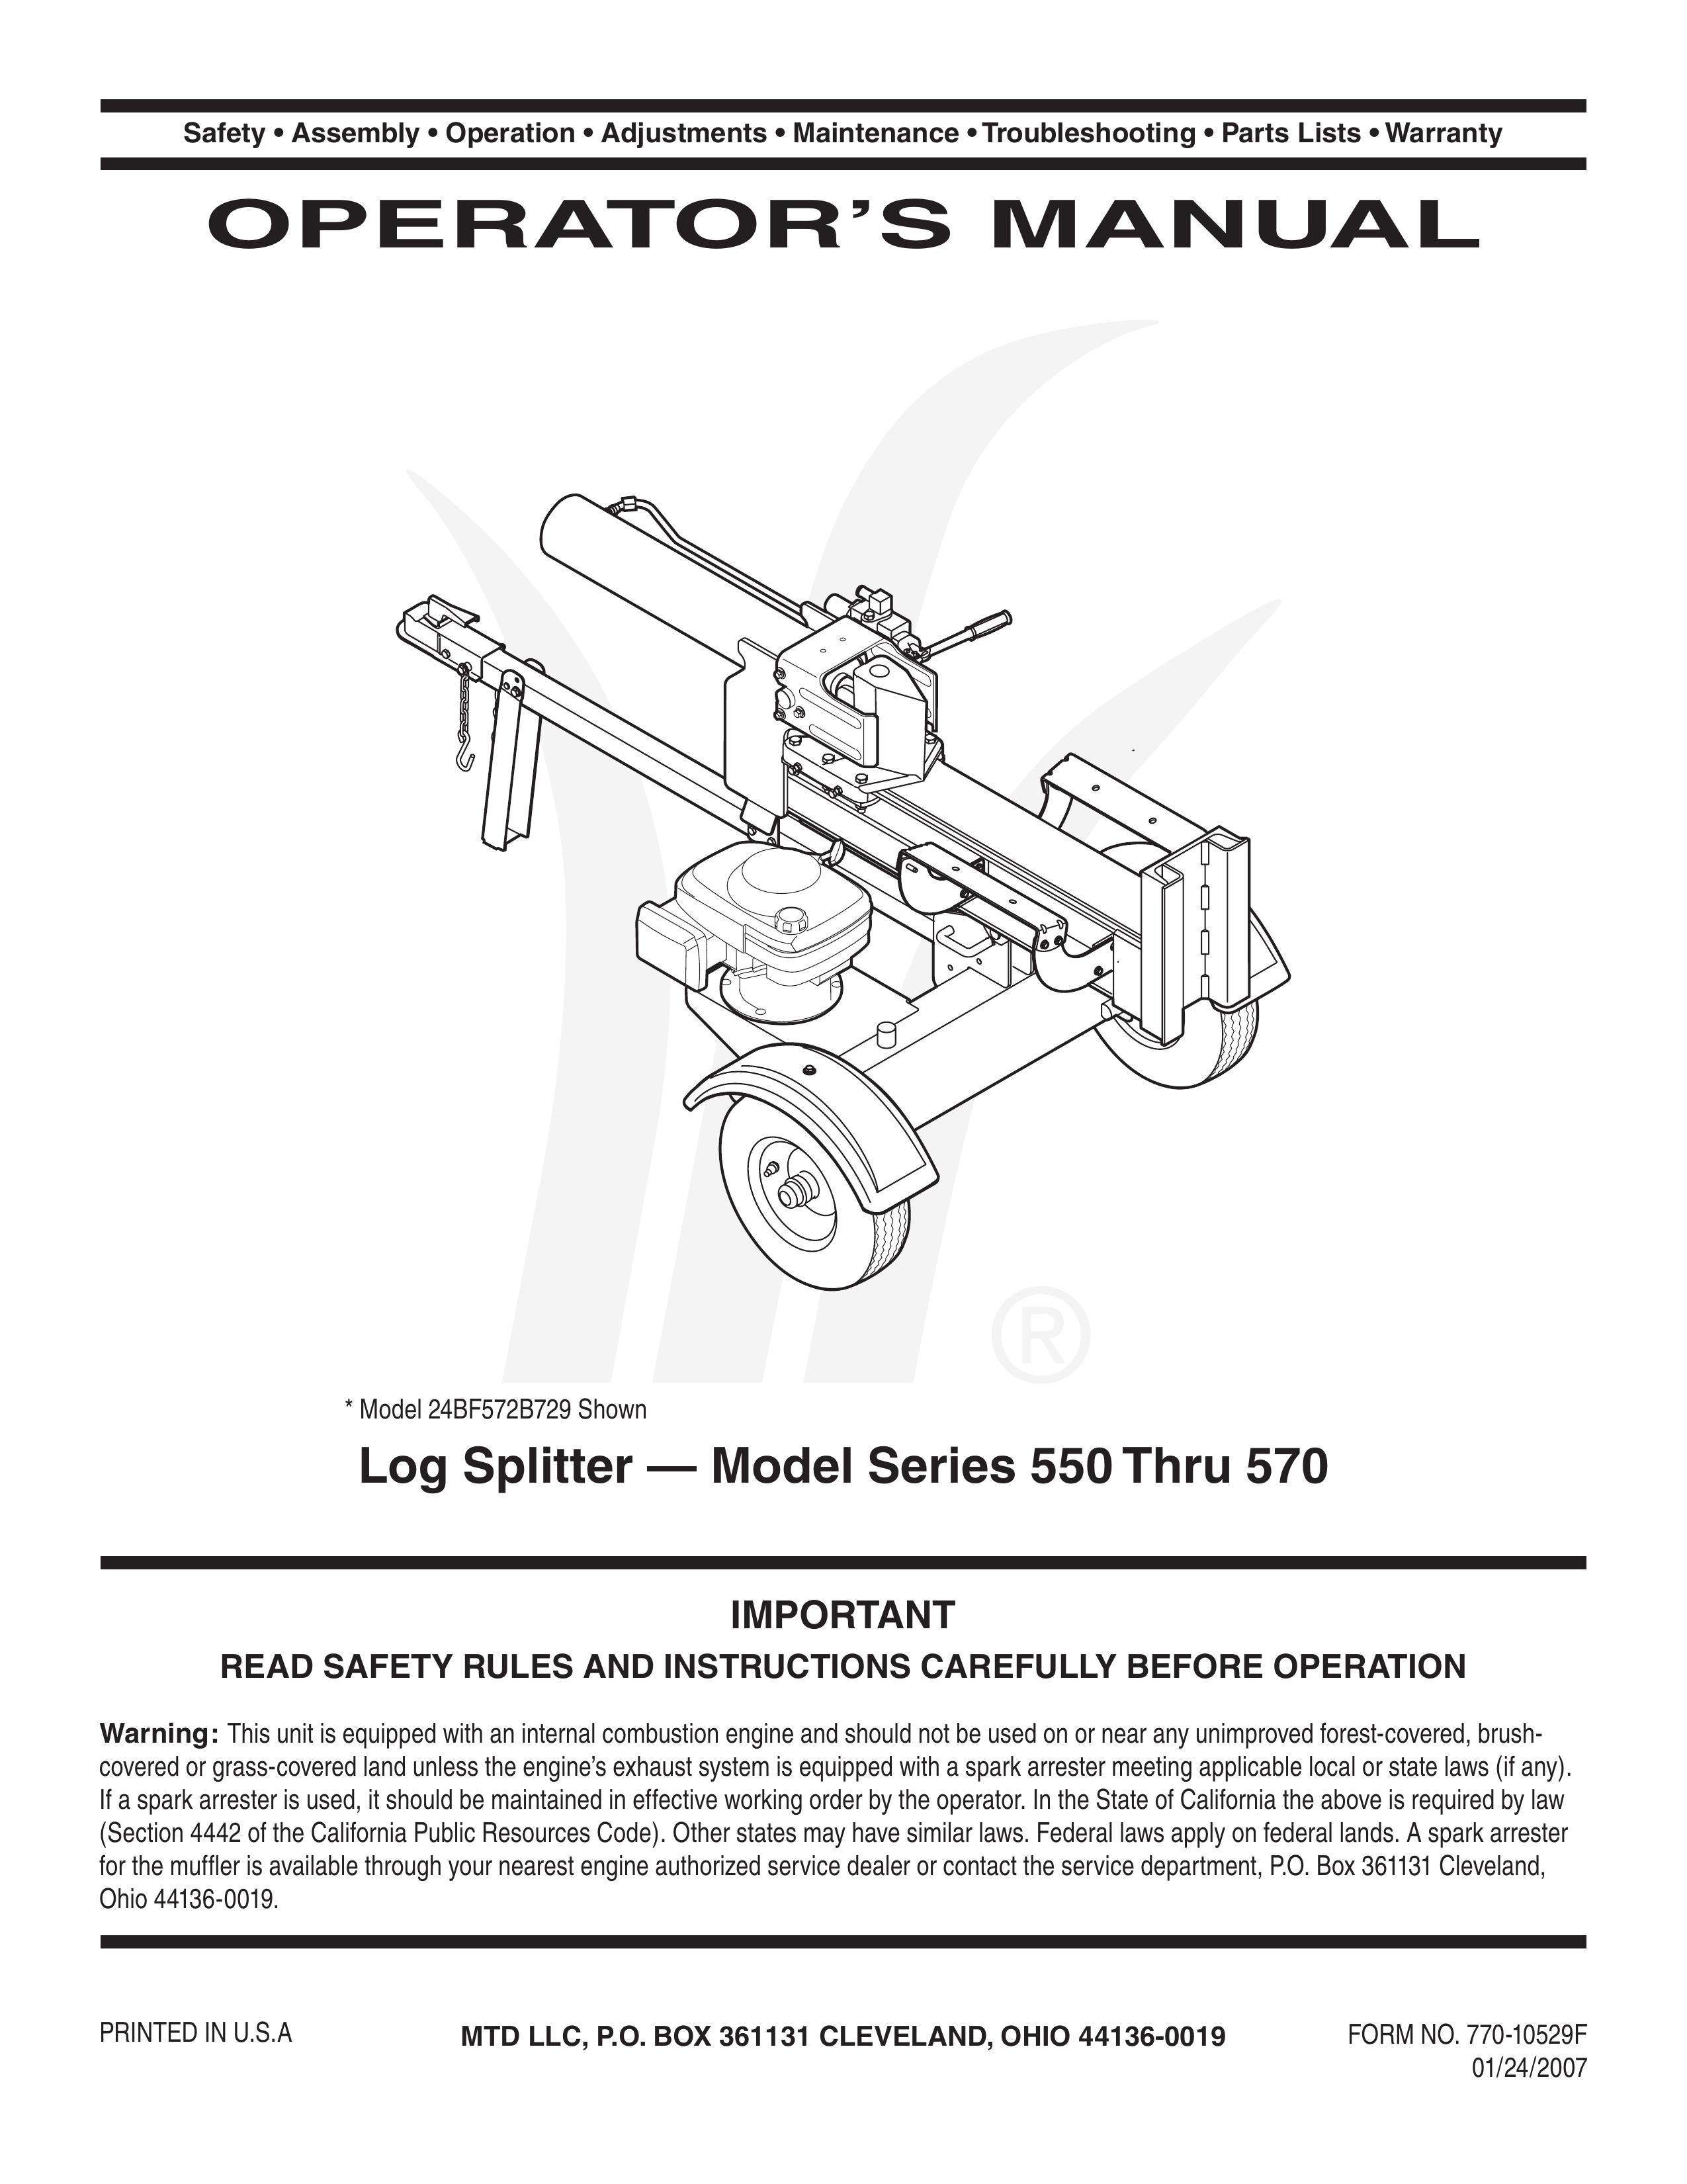 Yard-Man 550 Thru 570 Log Splitter User Manual